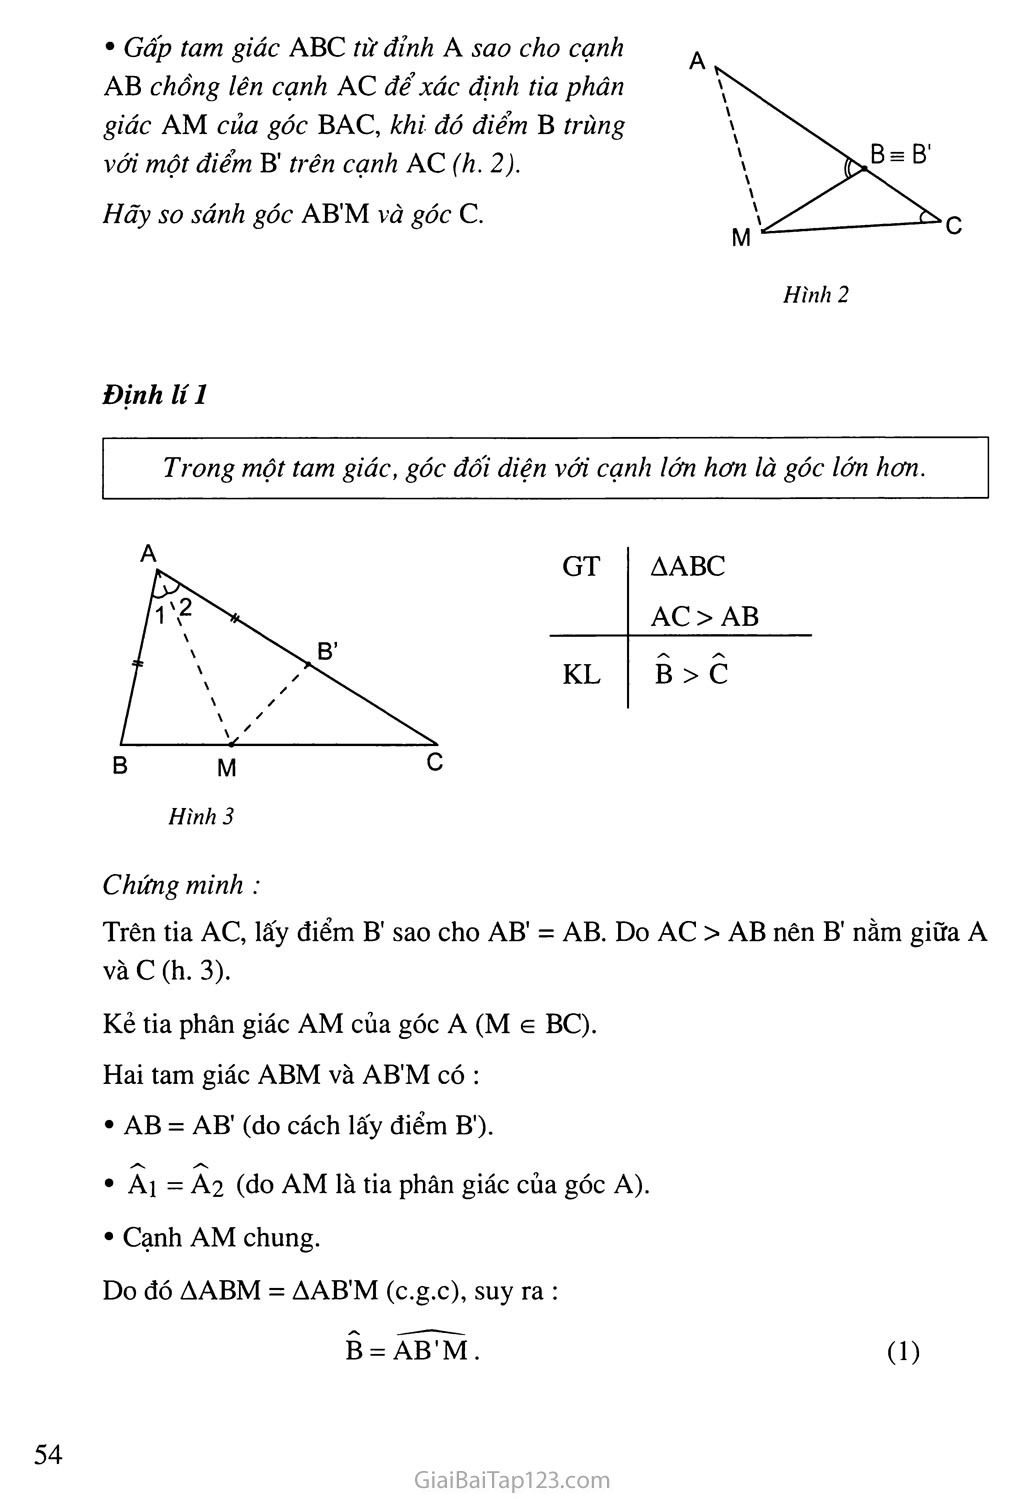 Bài 1. Quan hệ giữa góc và cạnh đối diện trong một tam giác trang 2